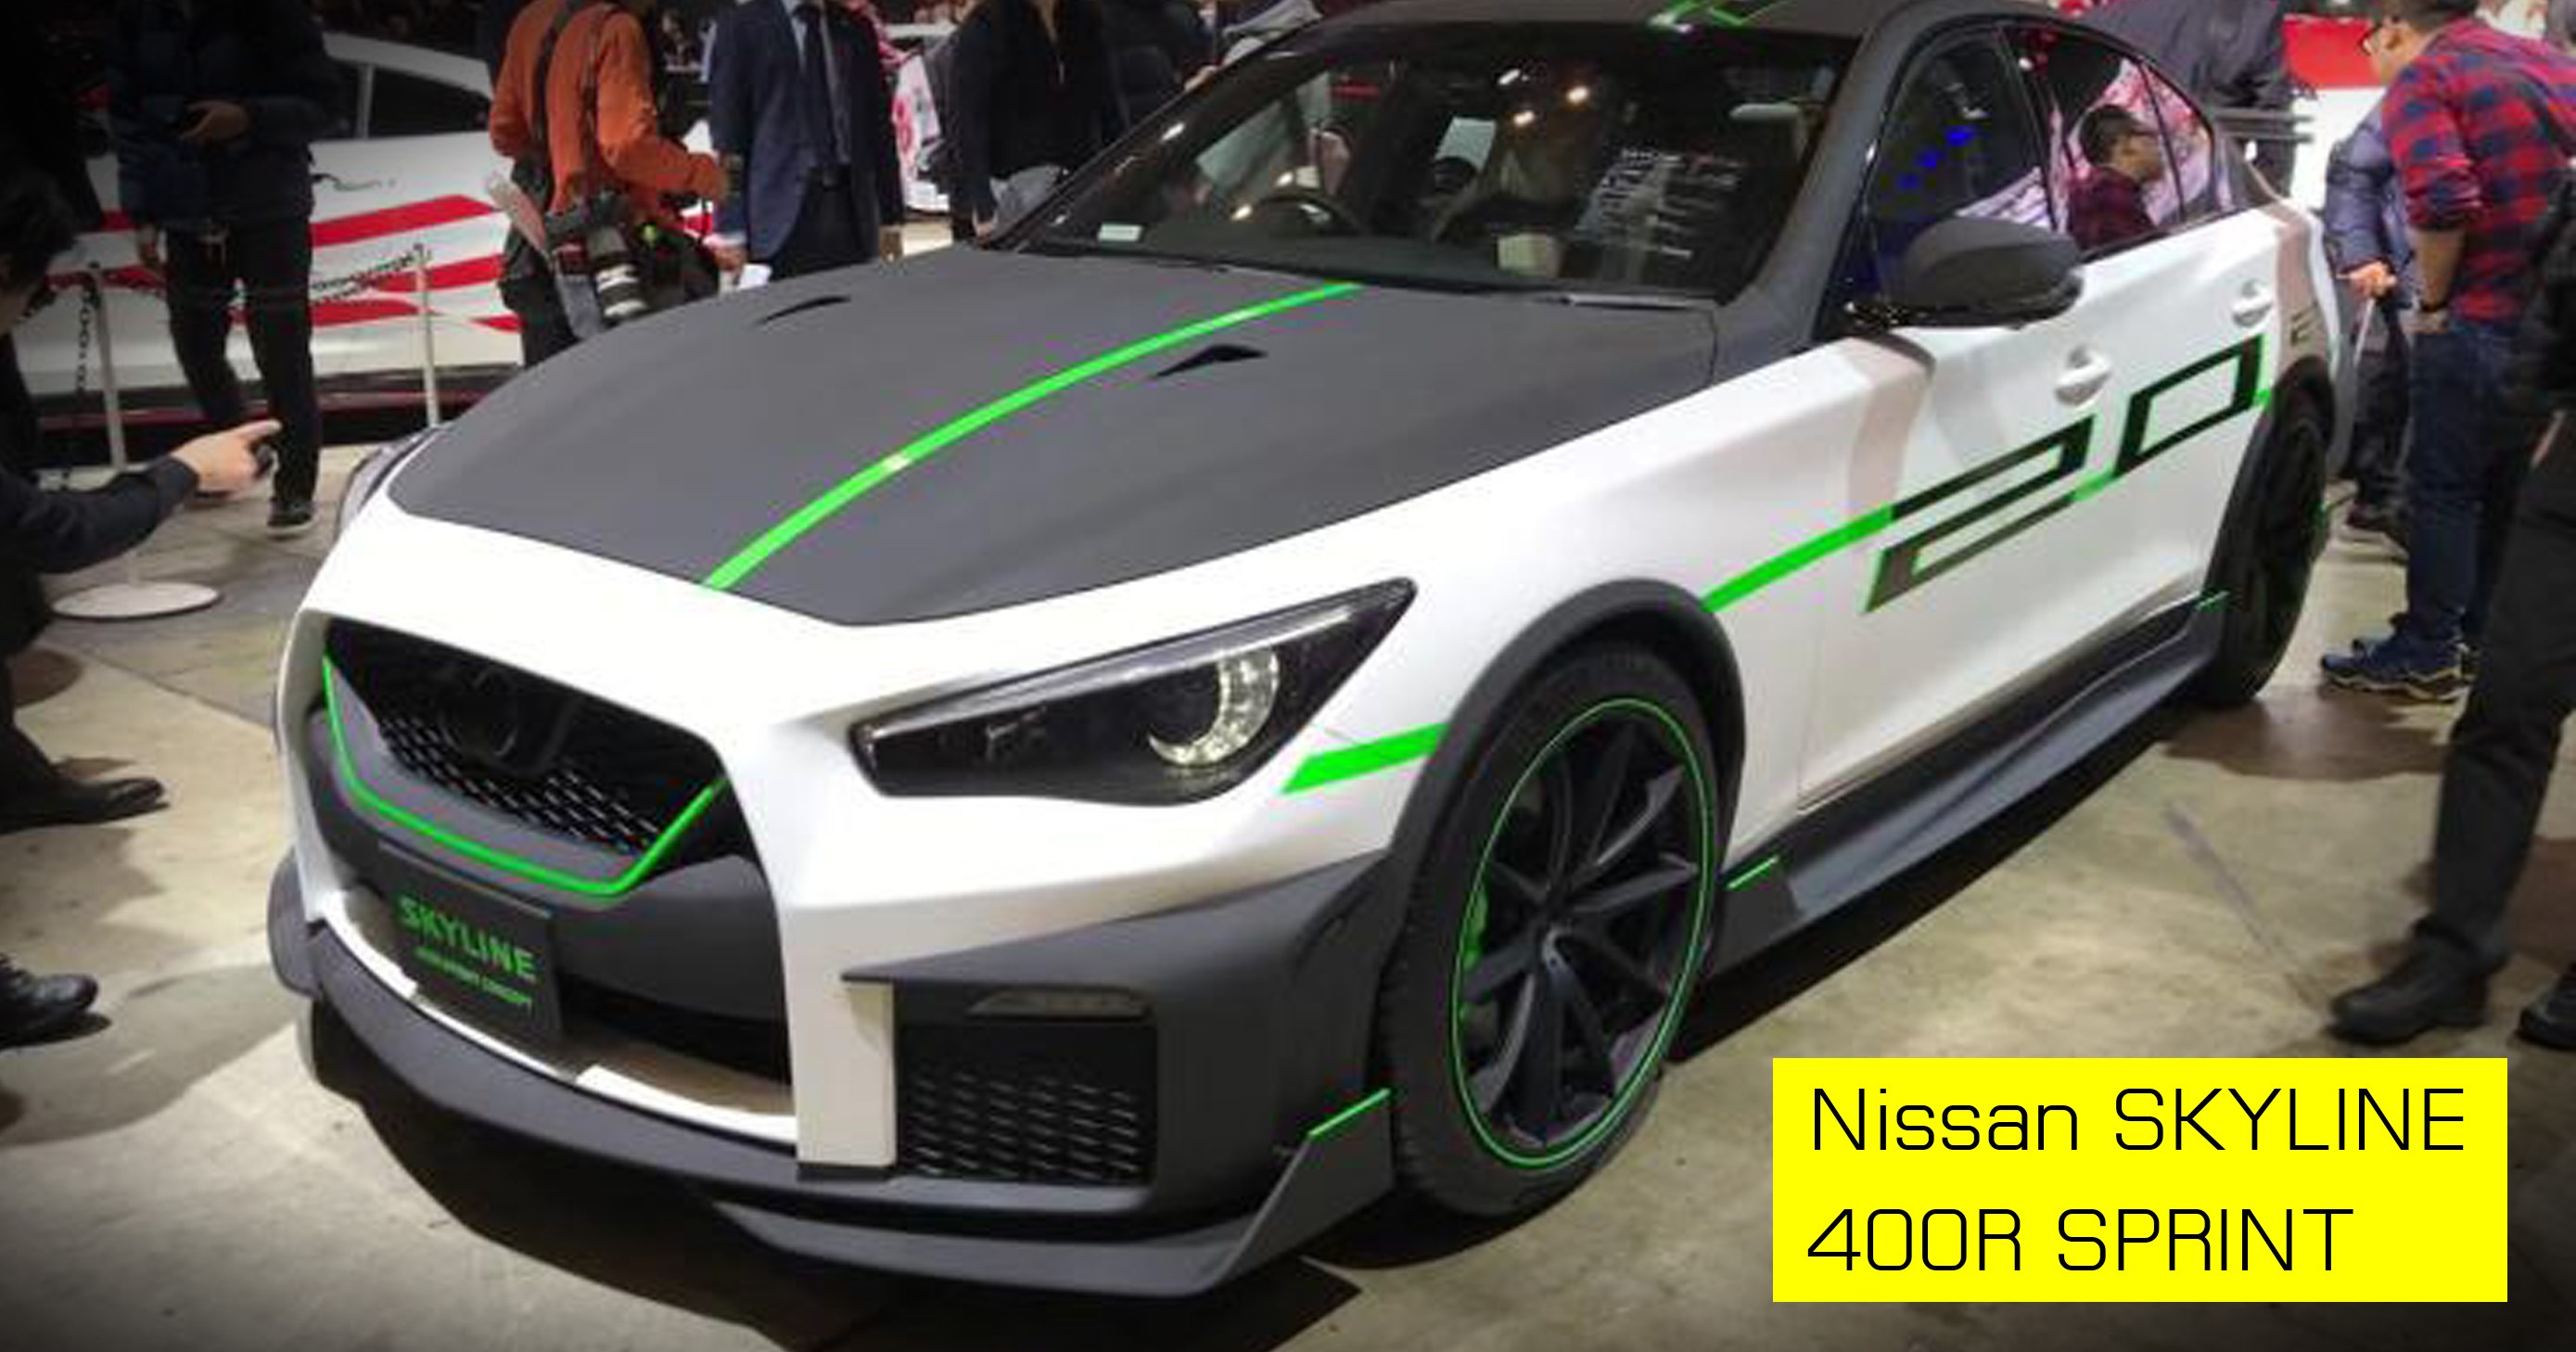 ภาพคันจริง Nissan SKYLINE 400R SPRINT CONCEPT ในงาน Tokyo Auto Salon 2020